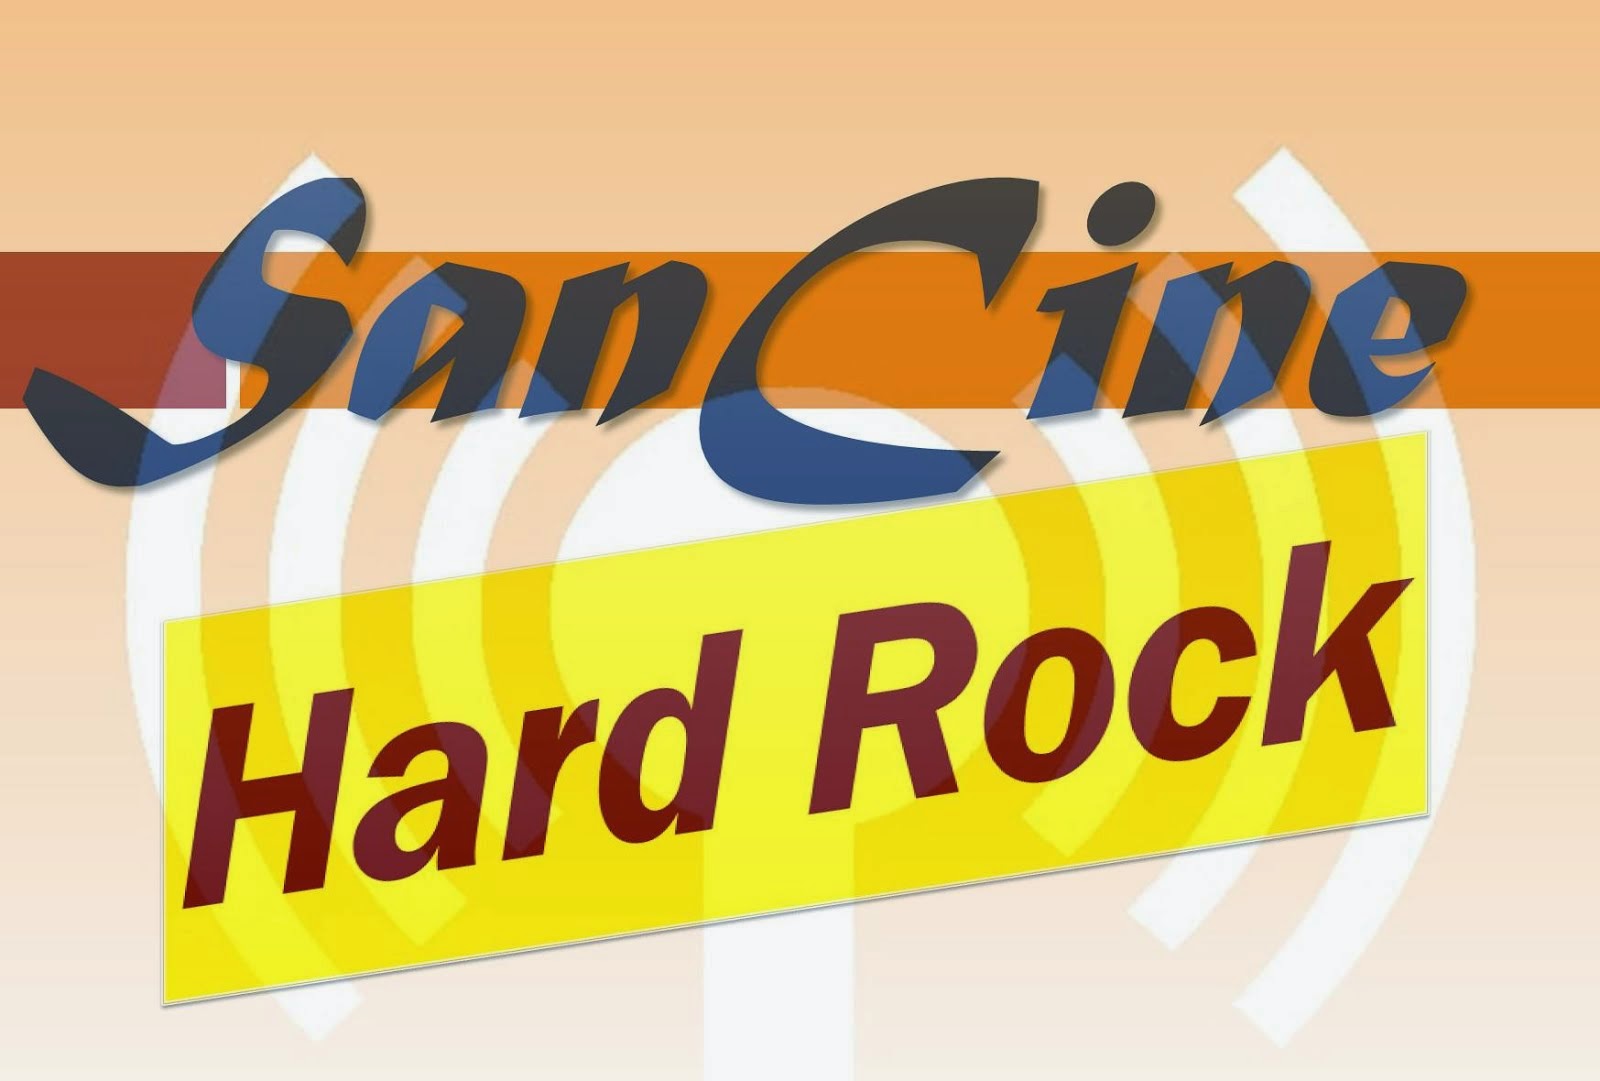 Sancine Hard Rock